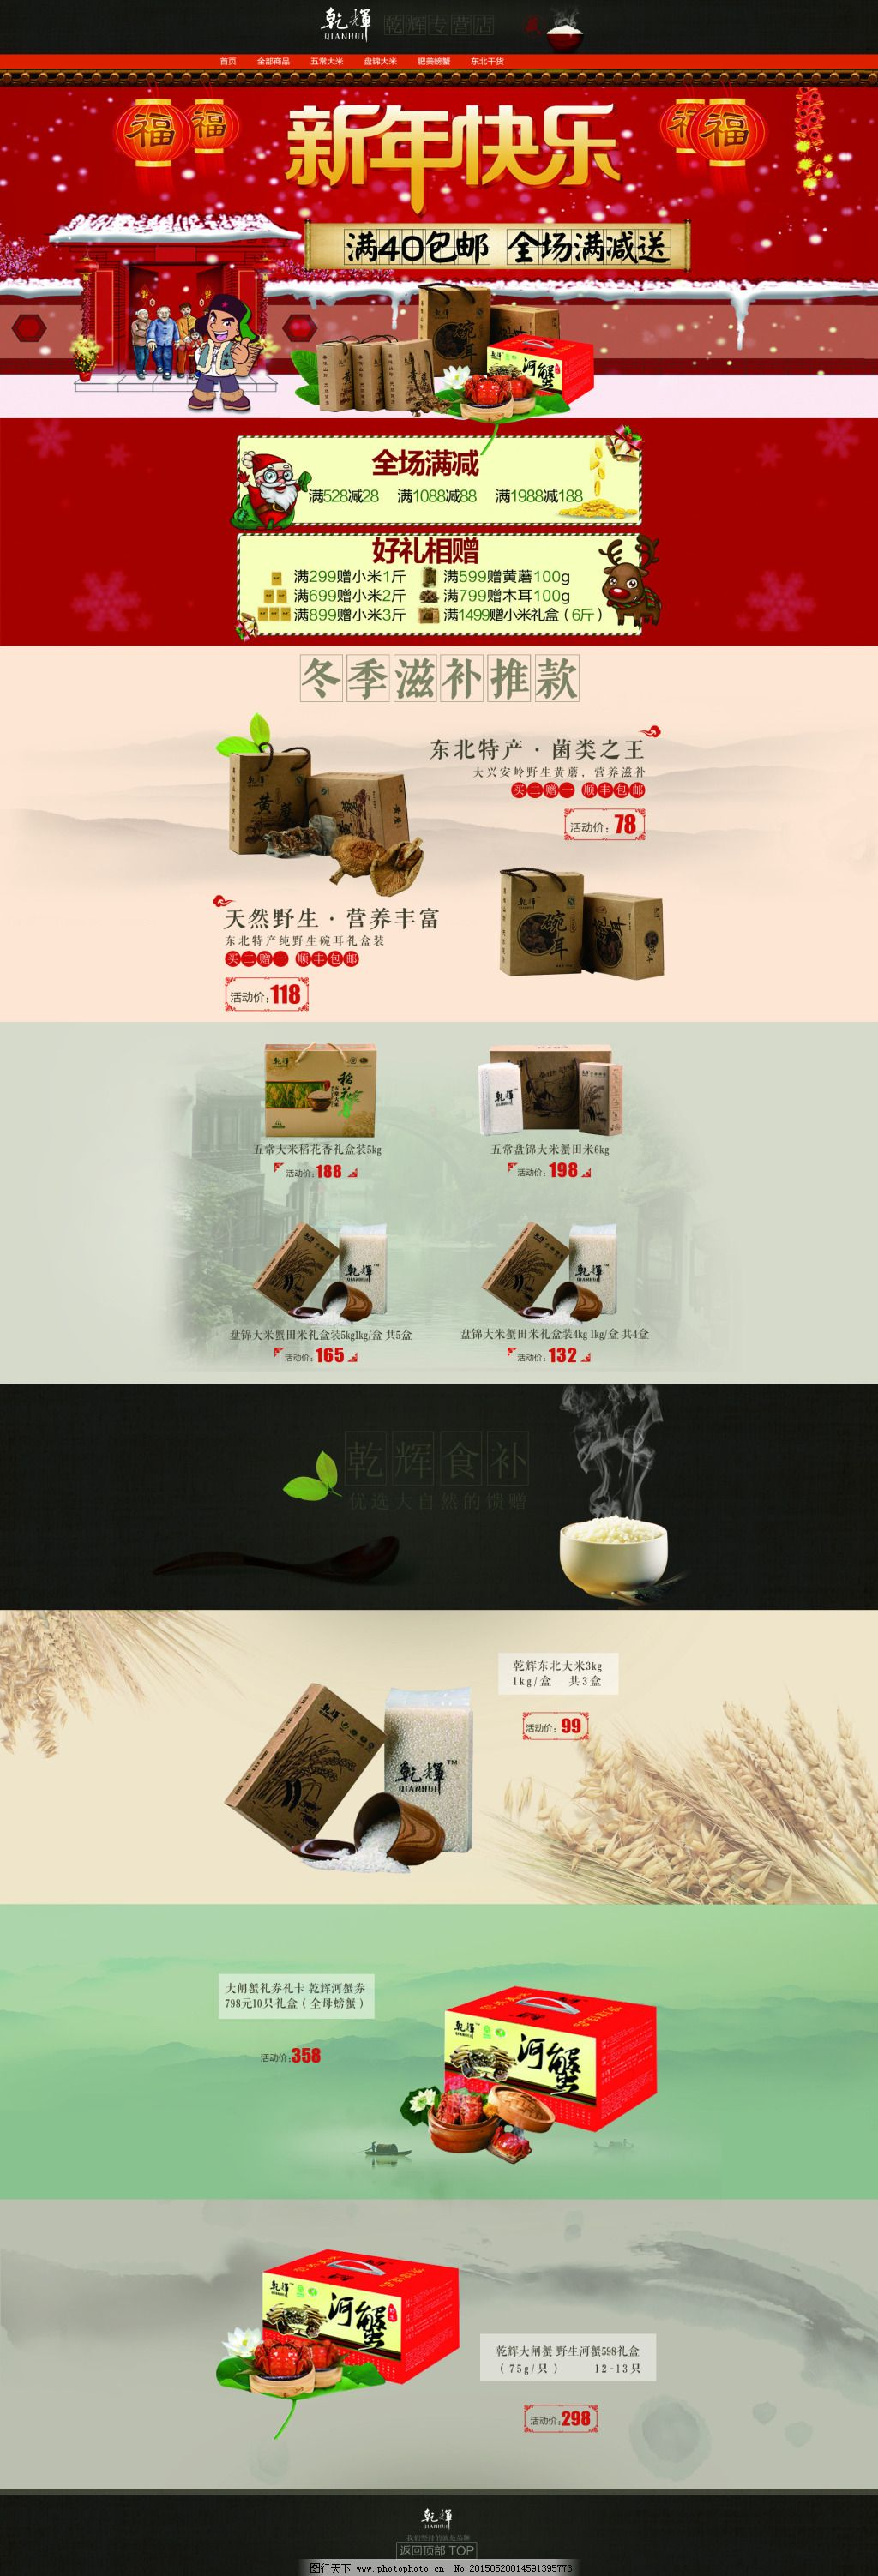 ‘~中国风山水画的的页面平面创作图片_食品茶饮_电商图片-  ~’ 的图片